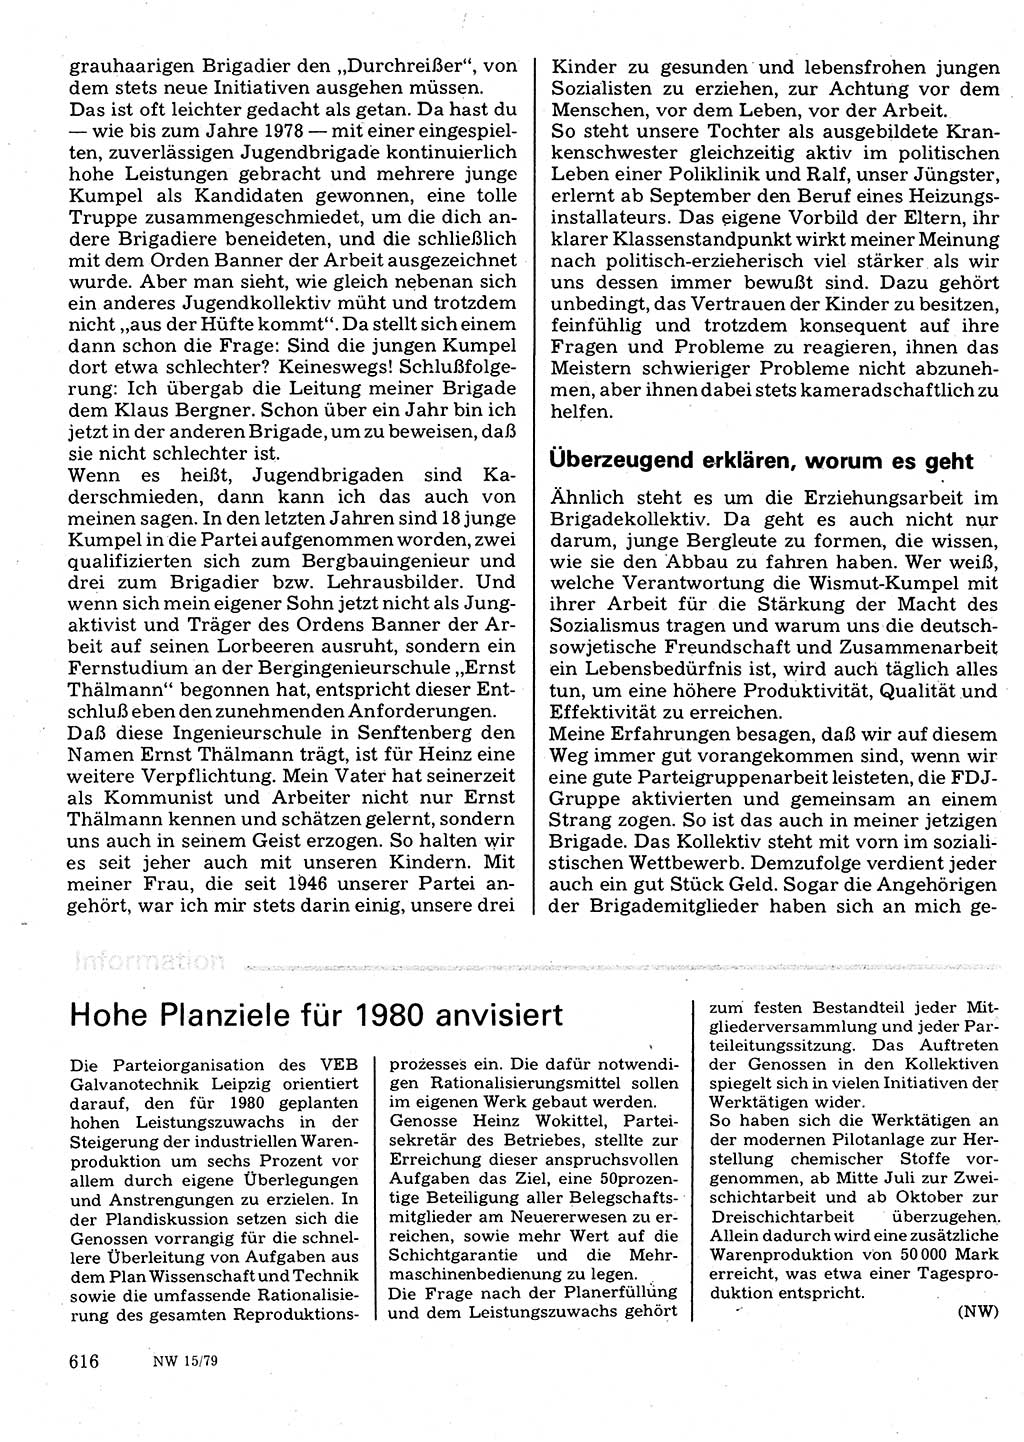 Neuer Weg (NW), Organ des Zentralkomitees (ZK) der SED (Sozialistische Einheitspartei Deutschlands) für Fragen des Parteilebens, 34. Jahrgang [Deutsche Demokratische Republik (DDR)] 1979, Seite 616 (NW ZK SED DDR 1979, S. 616)